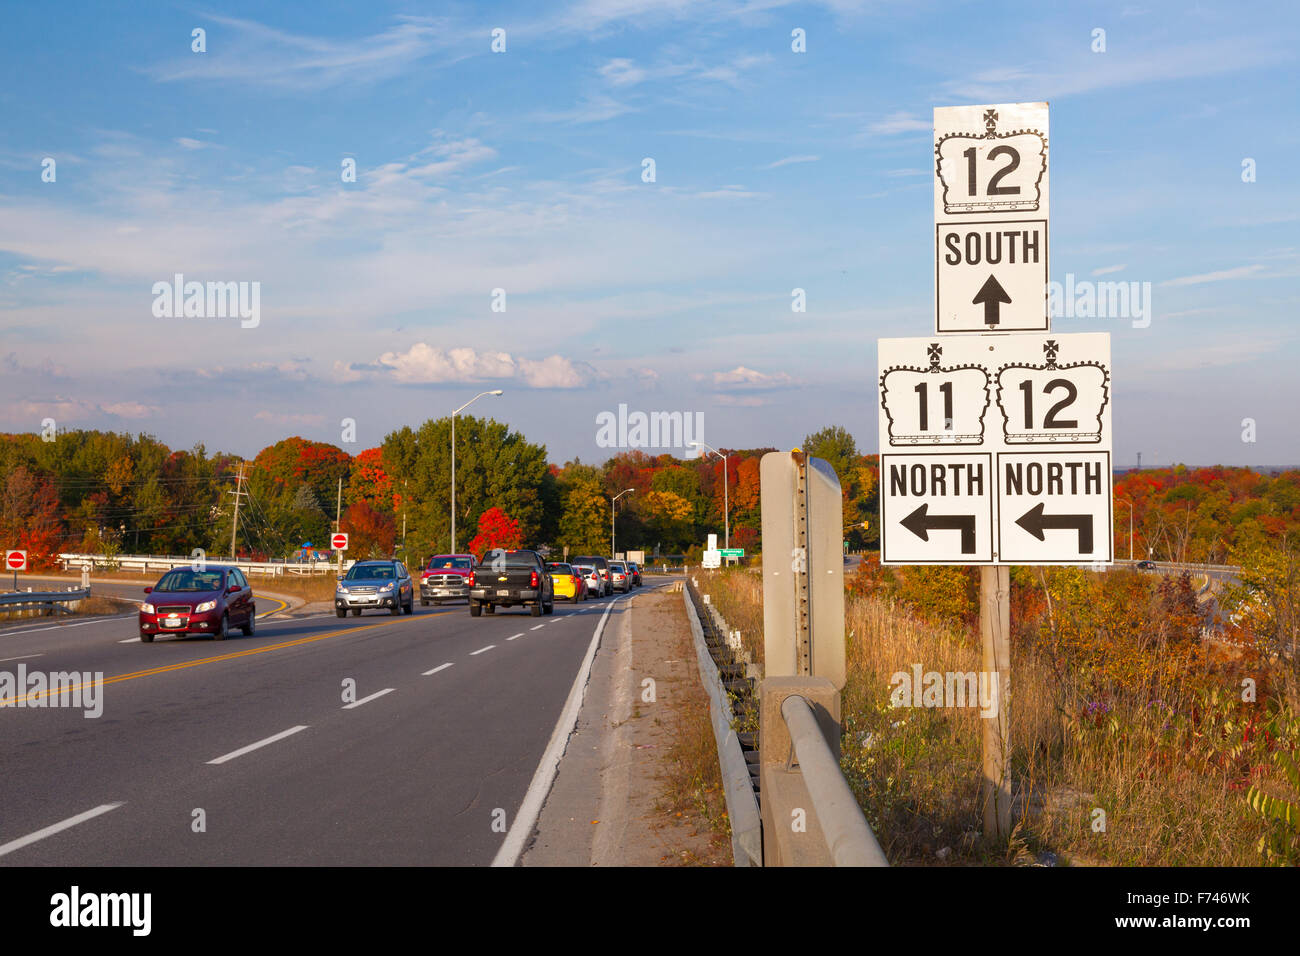 Las señales de la carretera apuntando a la autopista 12 y la autopista 11 al lado de una autopista muy transitada. Orillia, Ontario, Canadá. Foto de stock